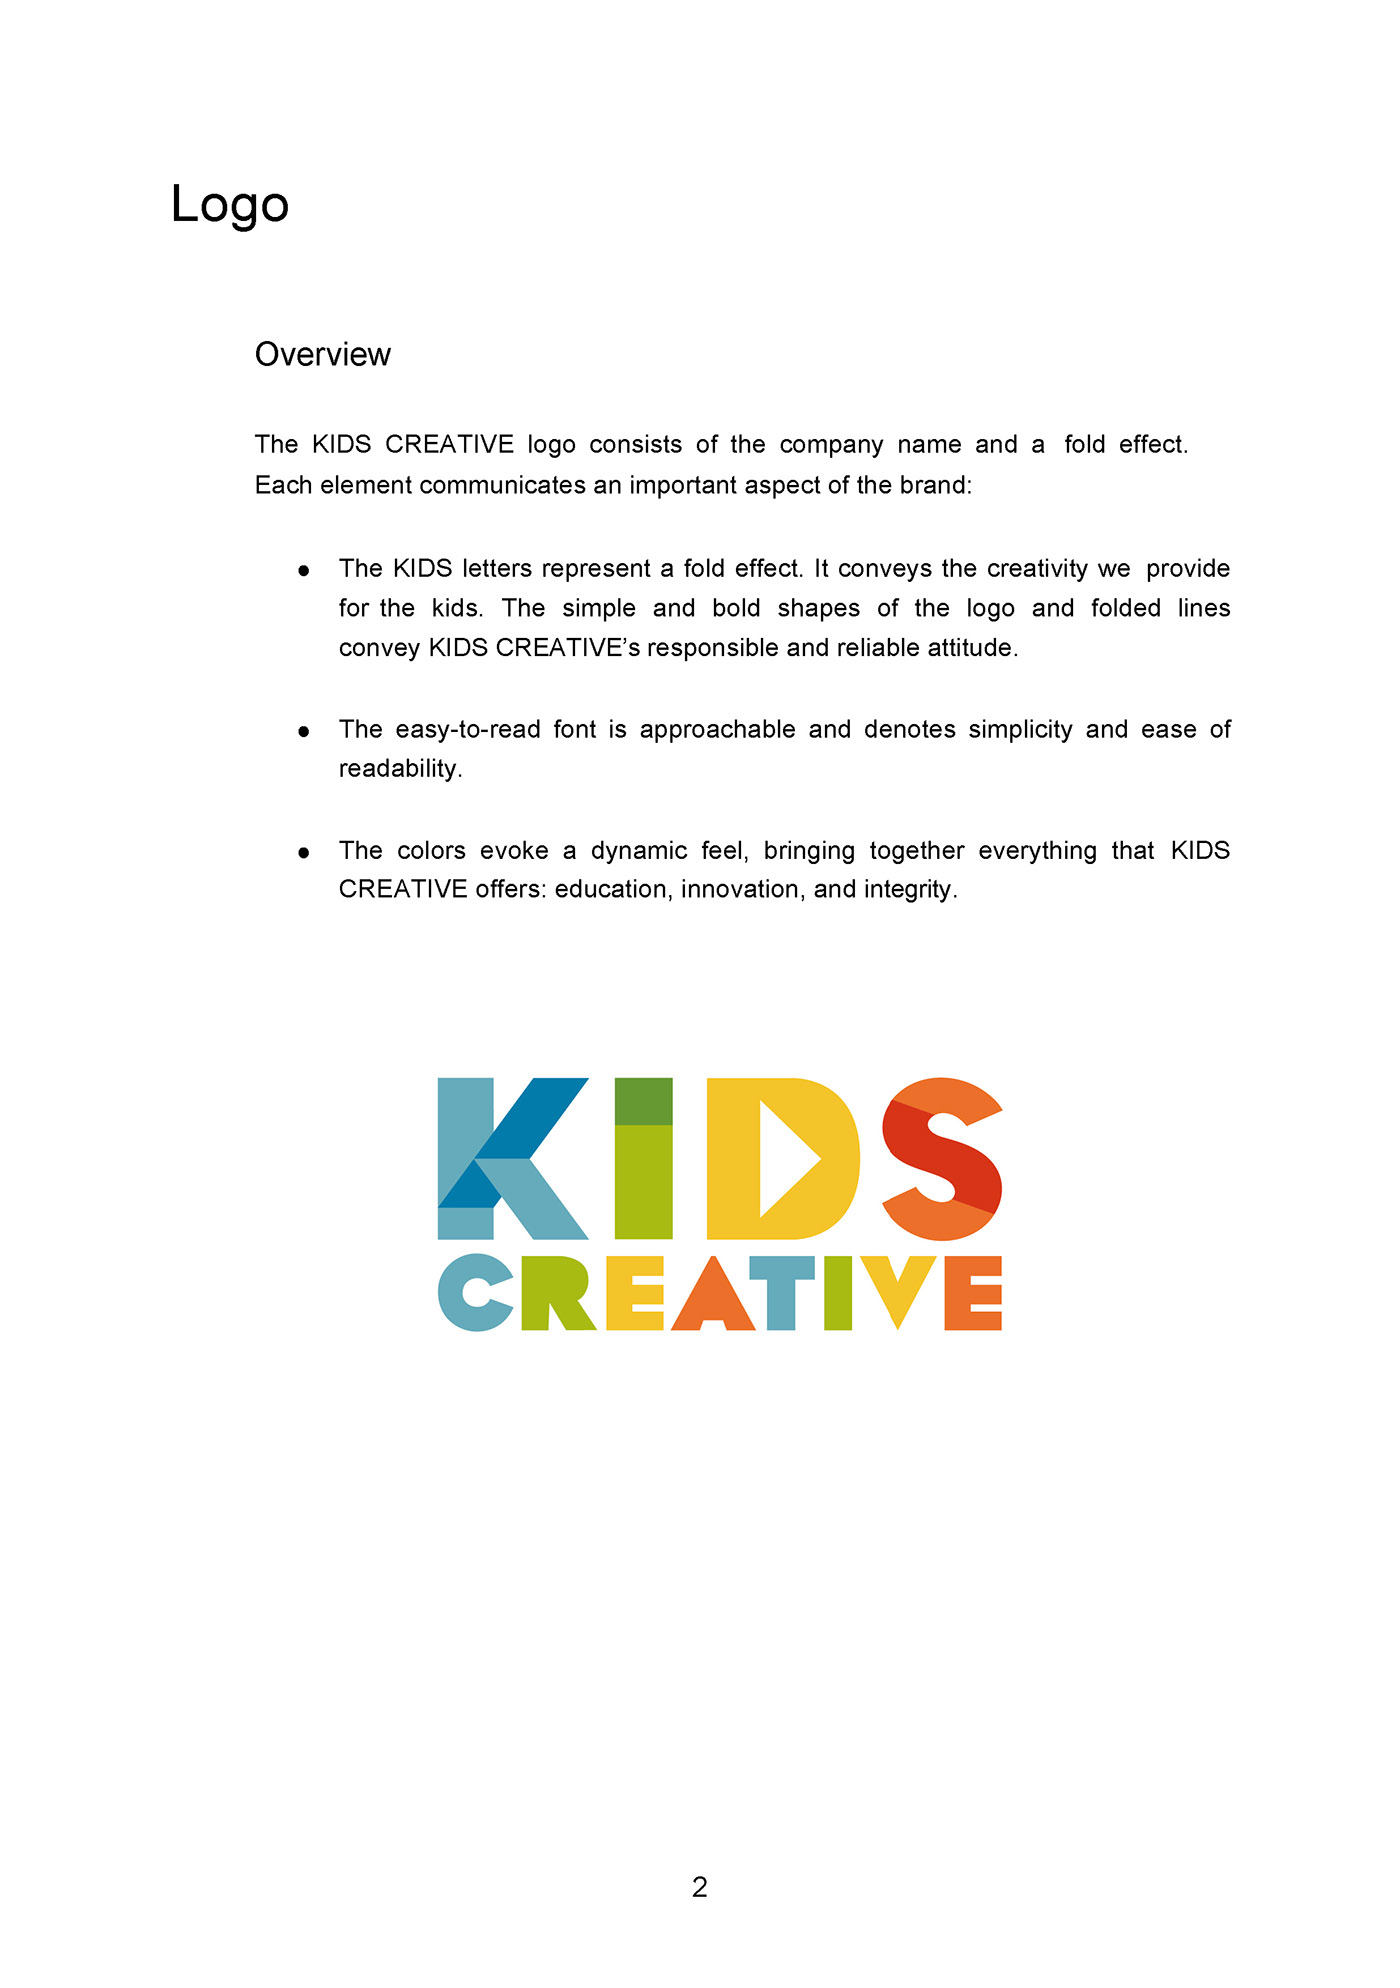 kids creative The Studio School Project non-profit